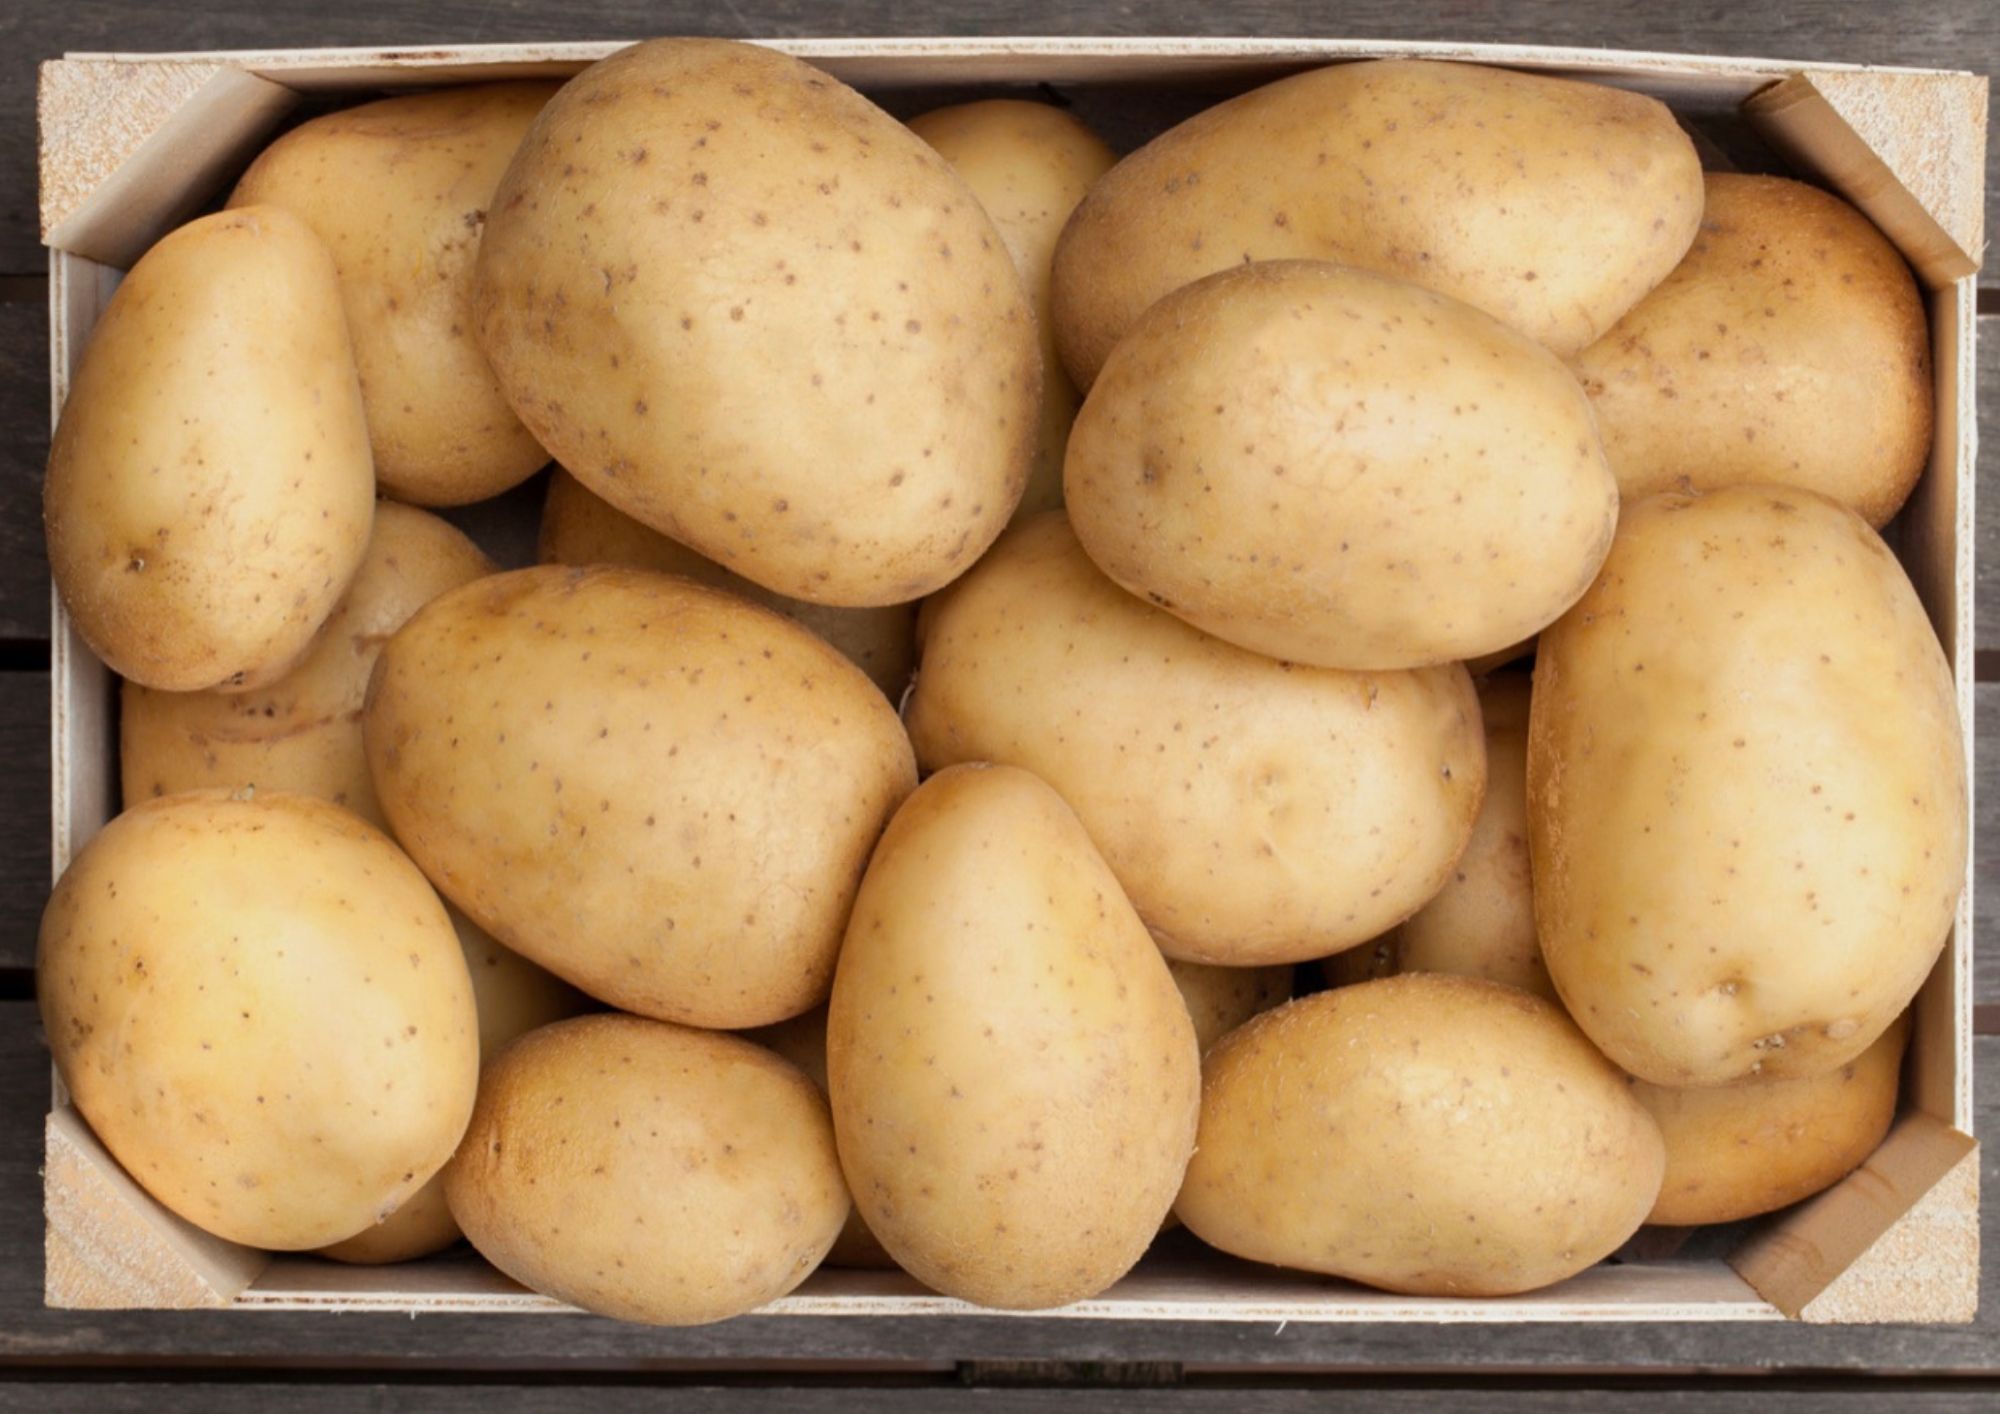 Dare per fare: Romagnoli F.lli donates potatoes and onions to the metropolitan community fund